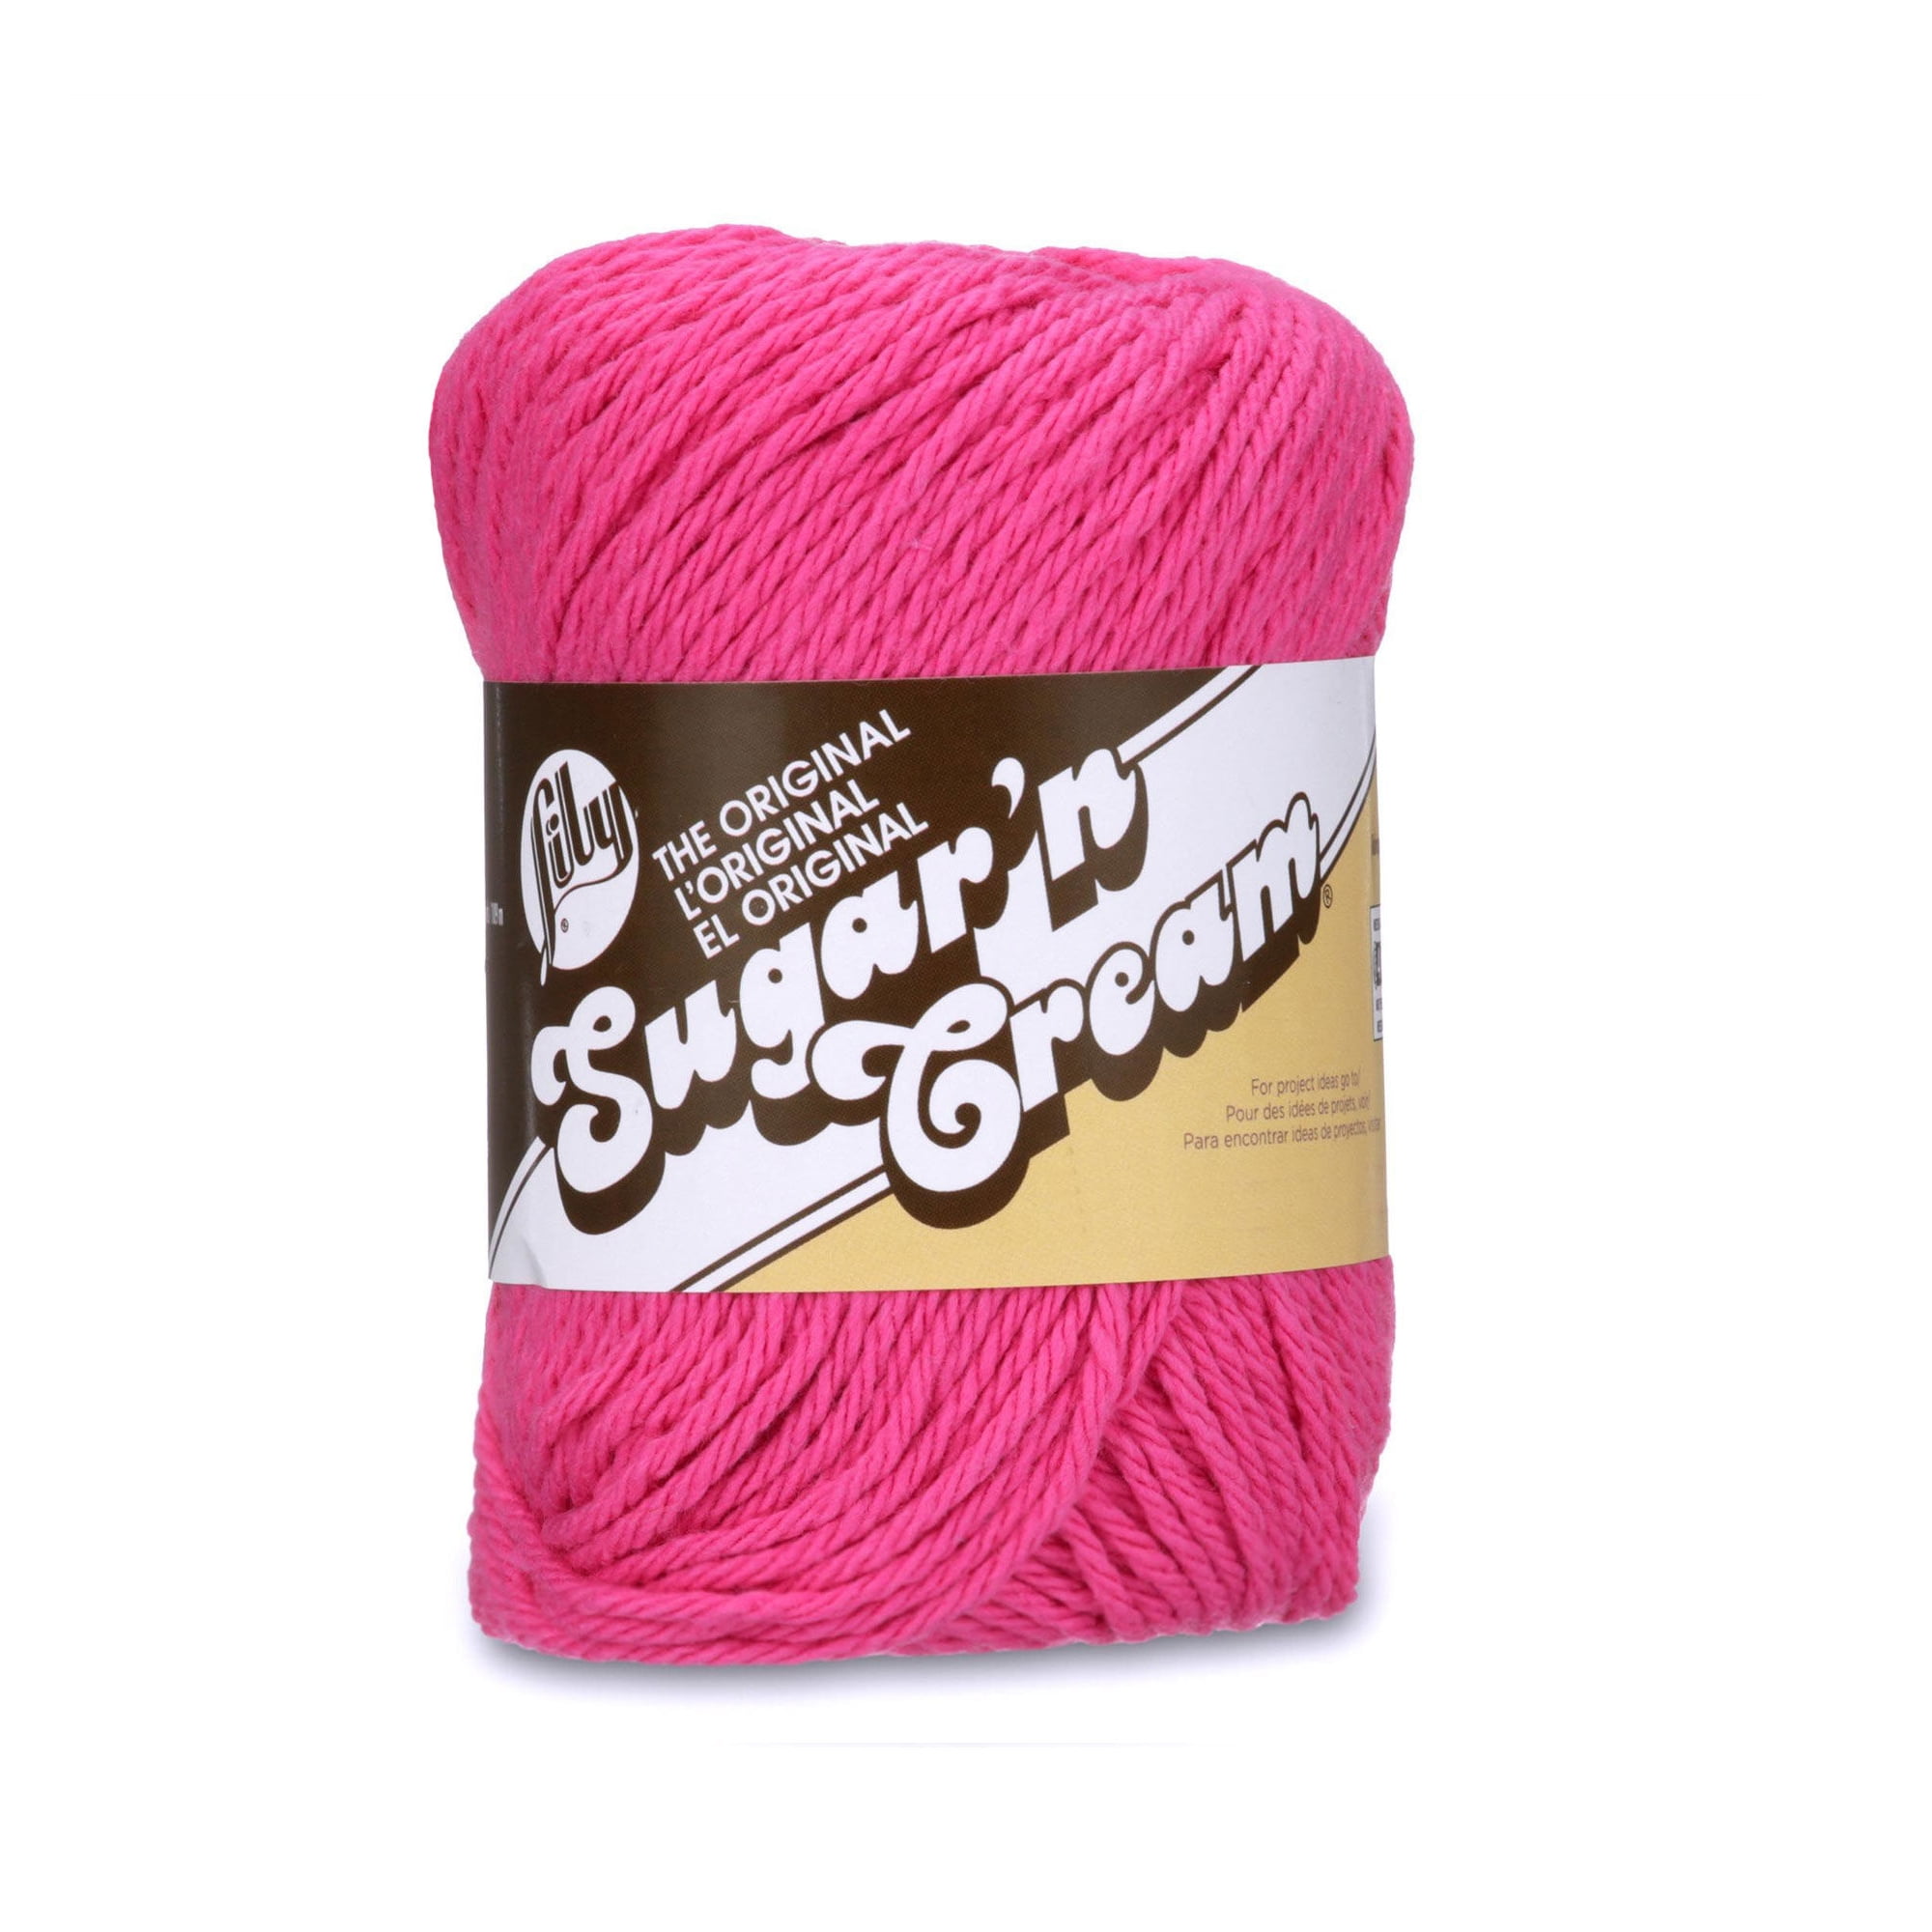 TRUNC88 Lily Yarn Hand Knit